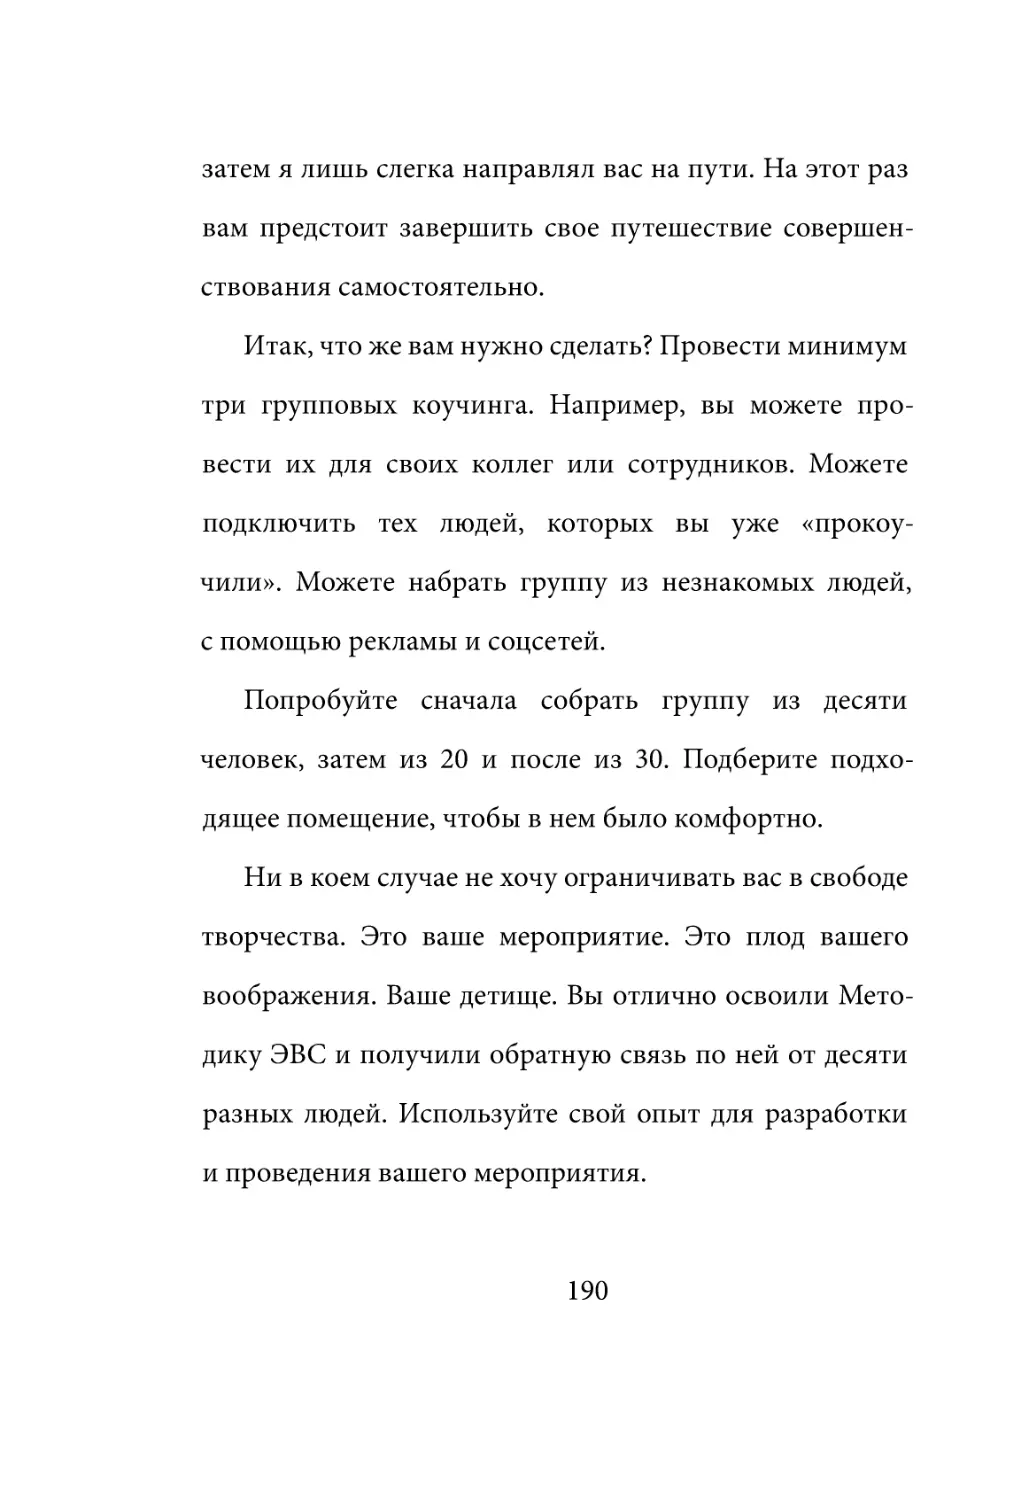 Sergey_Filippov_Dnevnik_samorazvitia_Evolyutsia_Vnutrennego_Sostoyania_190.pdf (p.190)